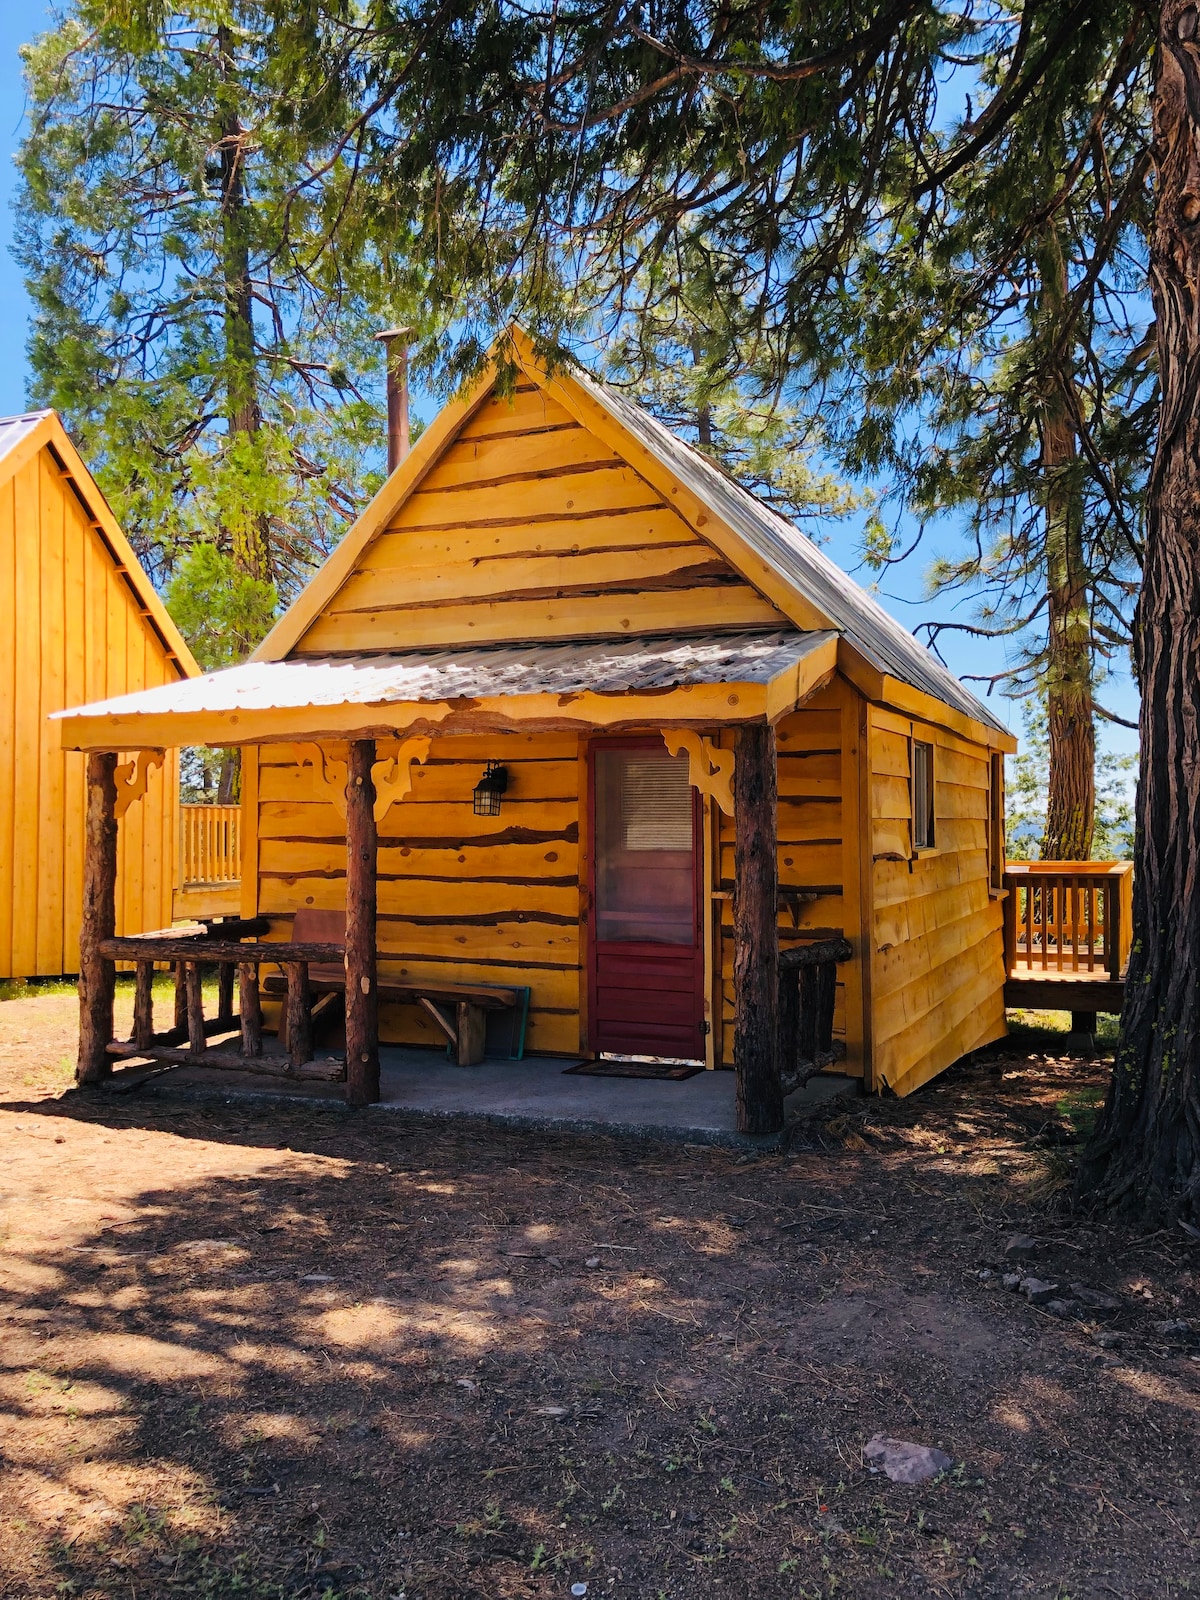 内华达山脉的「Bear Den」小屋